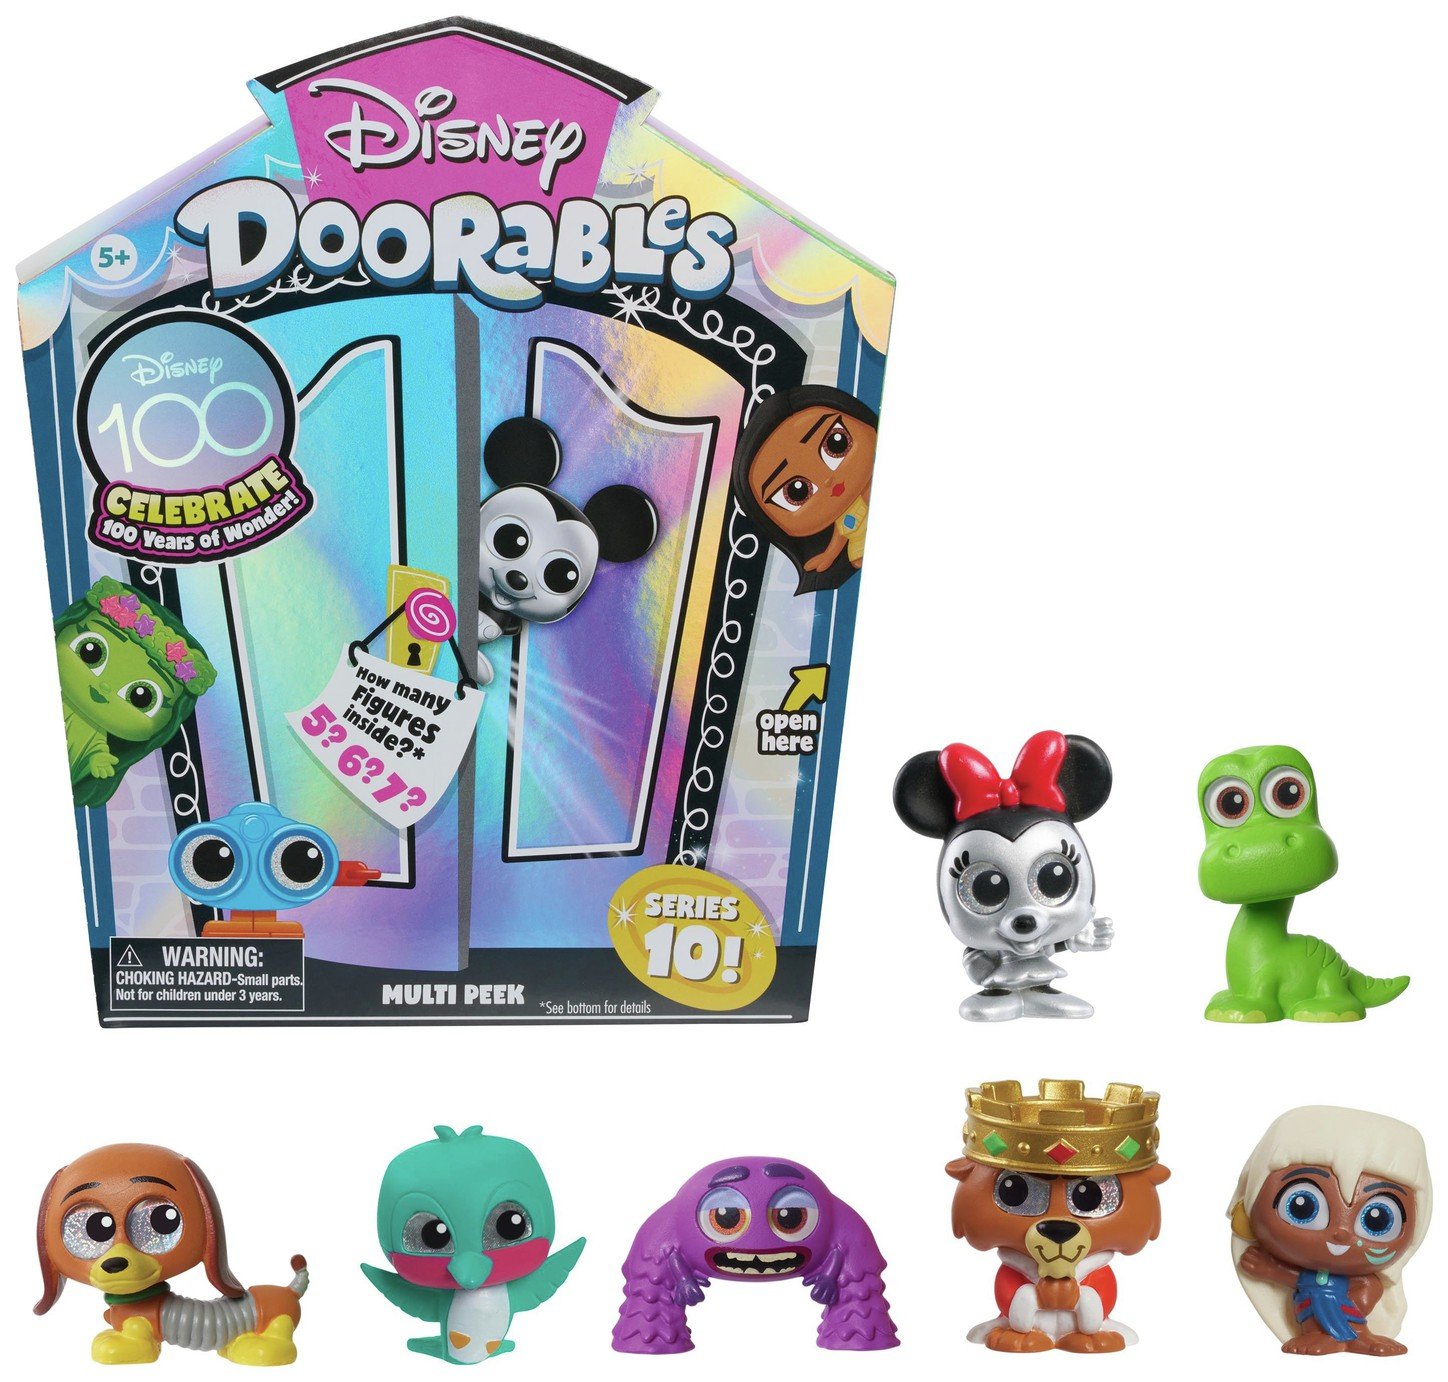 Disney Doorables Series 10 Multi Peek Exclusive Mini Figures